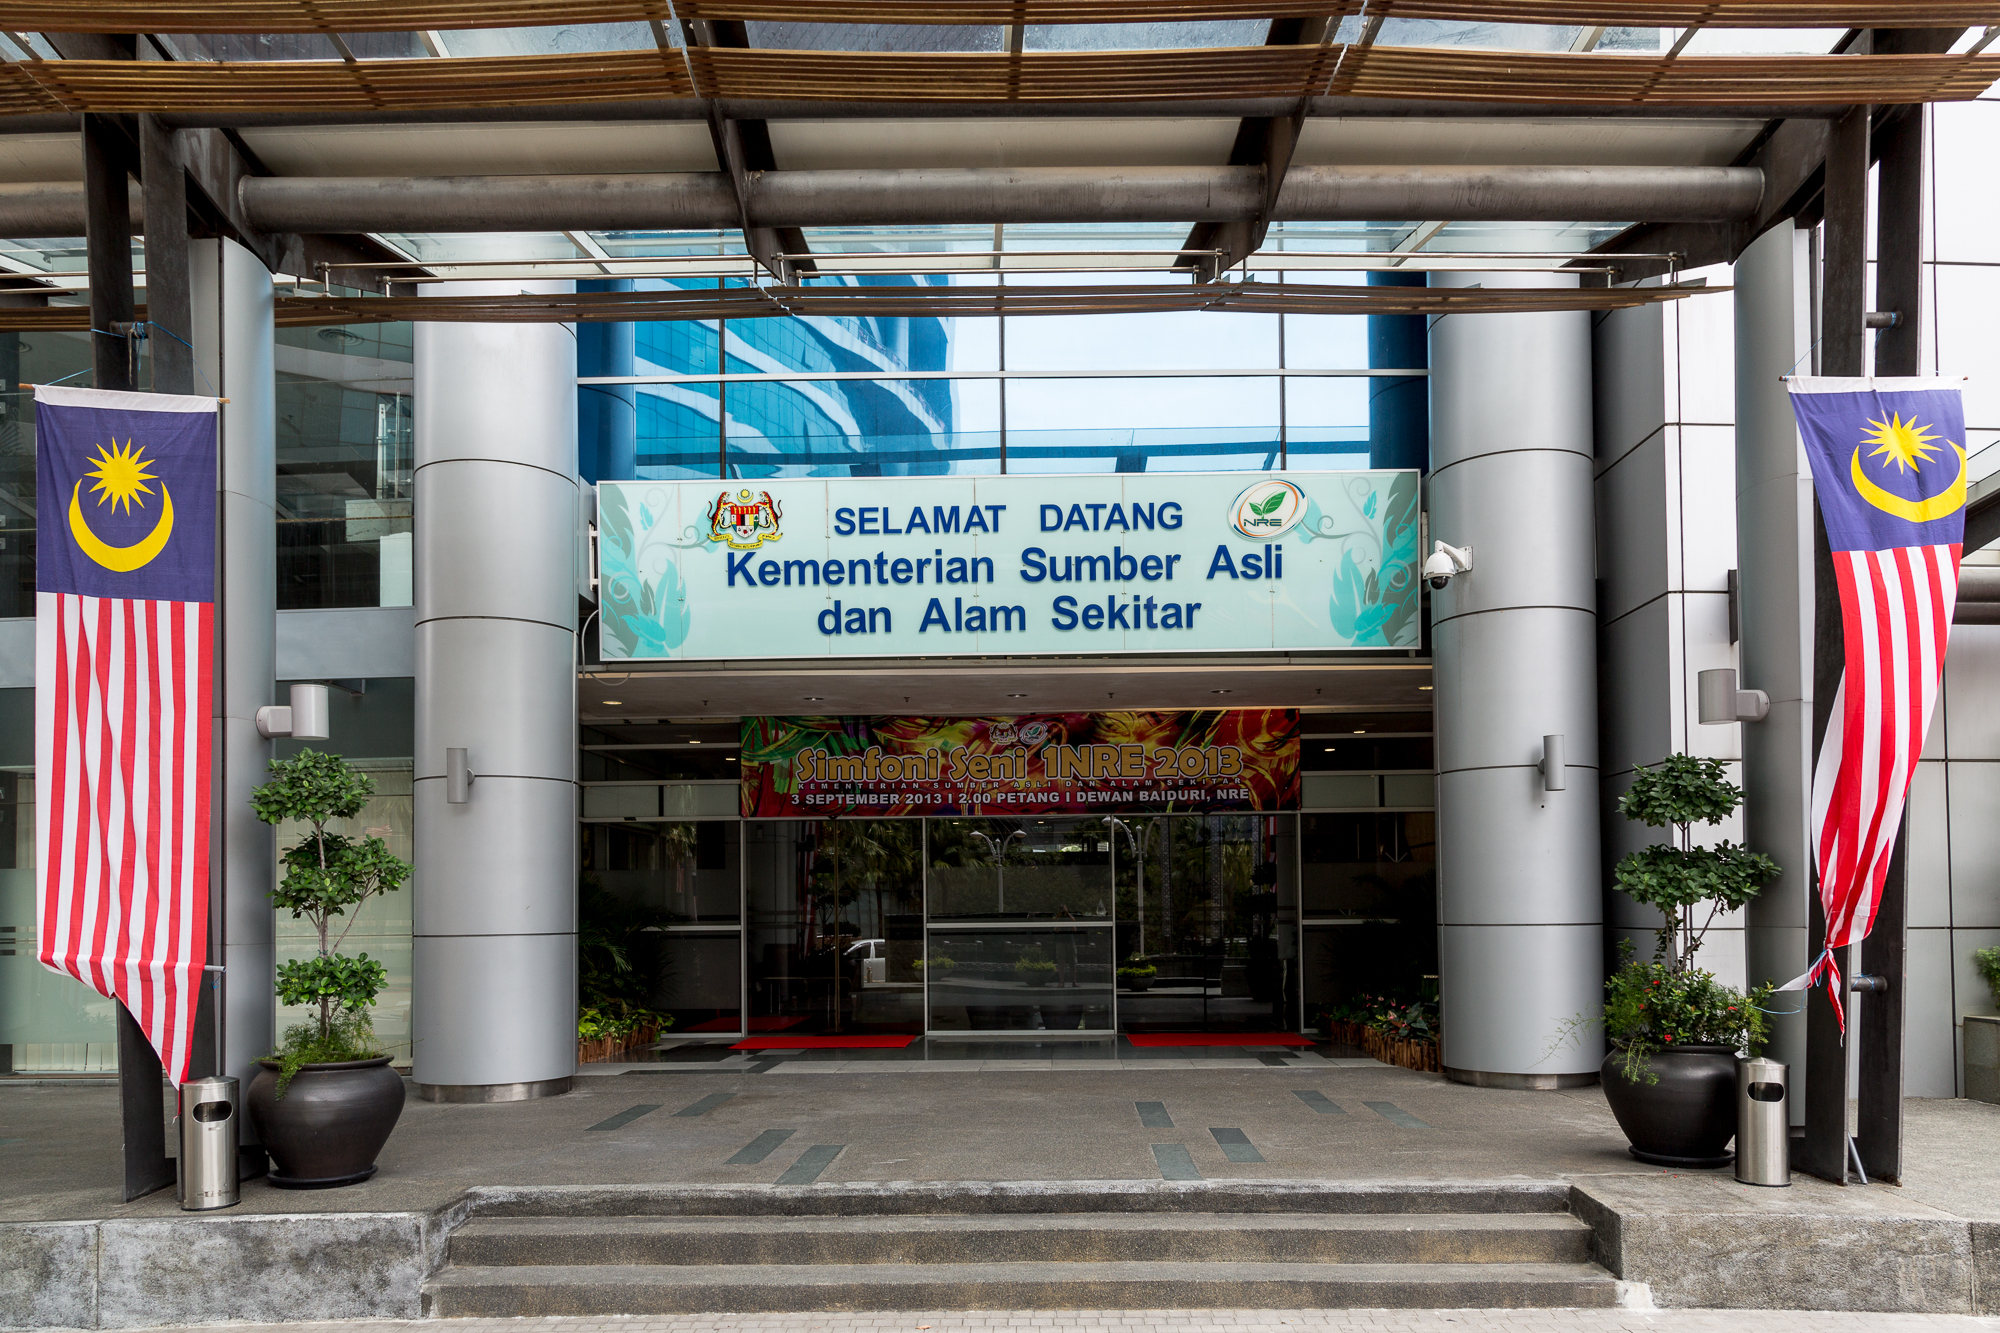 Jawatan Kosong Di Kementerian Sumber Asli Dan Alam Sekitar Malaysia Kekosongan Seluruh Negara Jobcari Com Jawatan Kosong Terkini